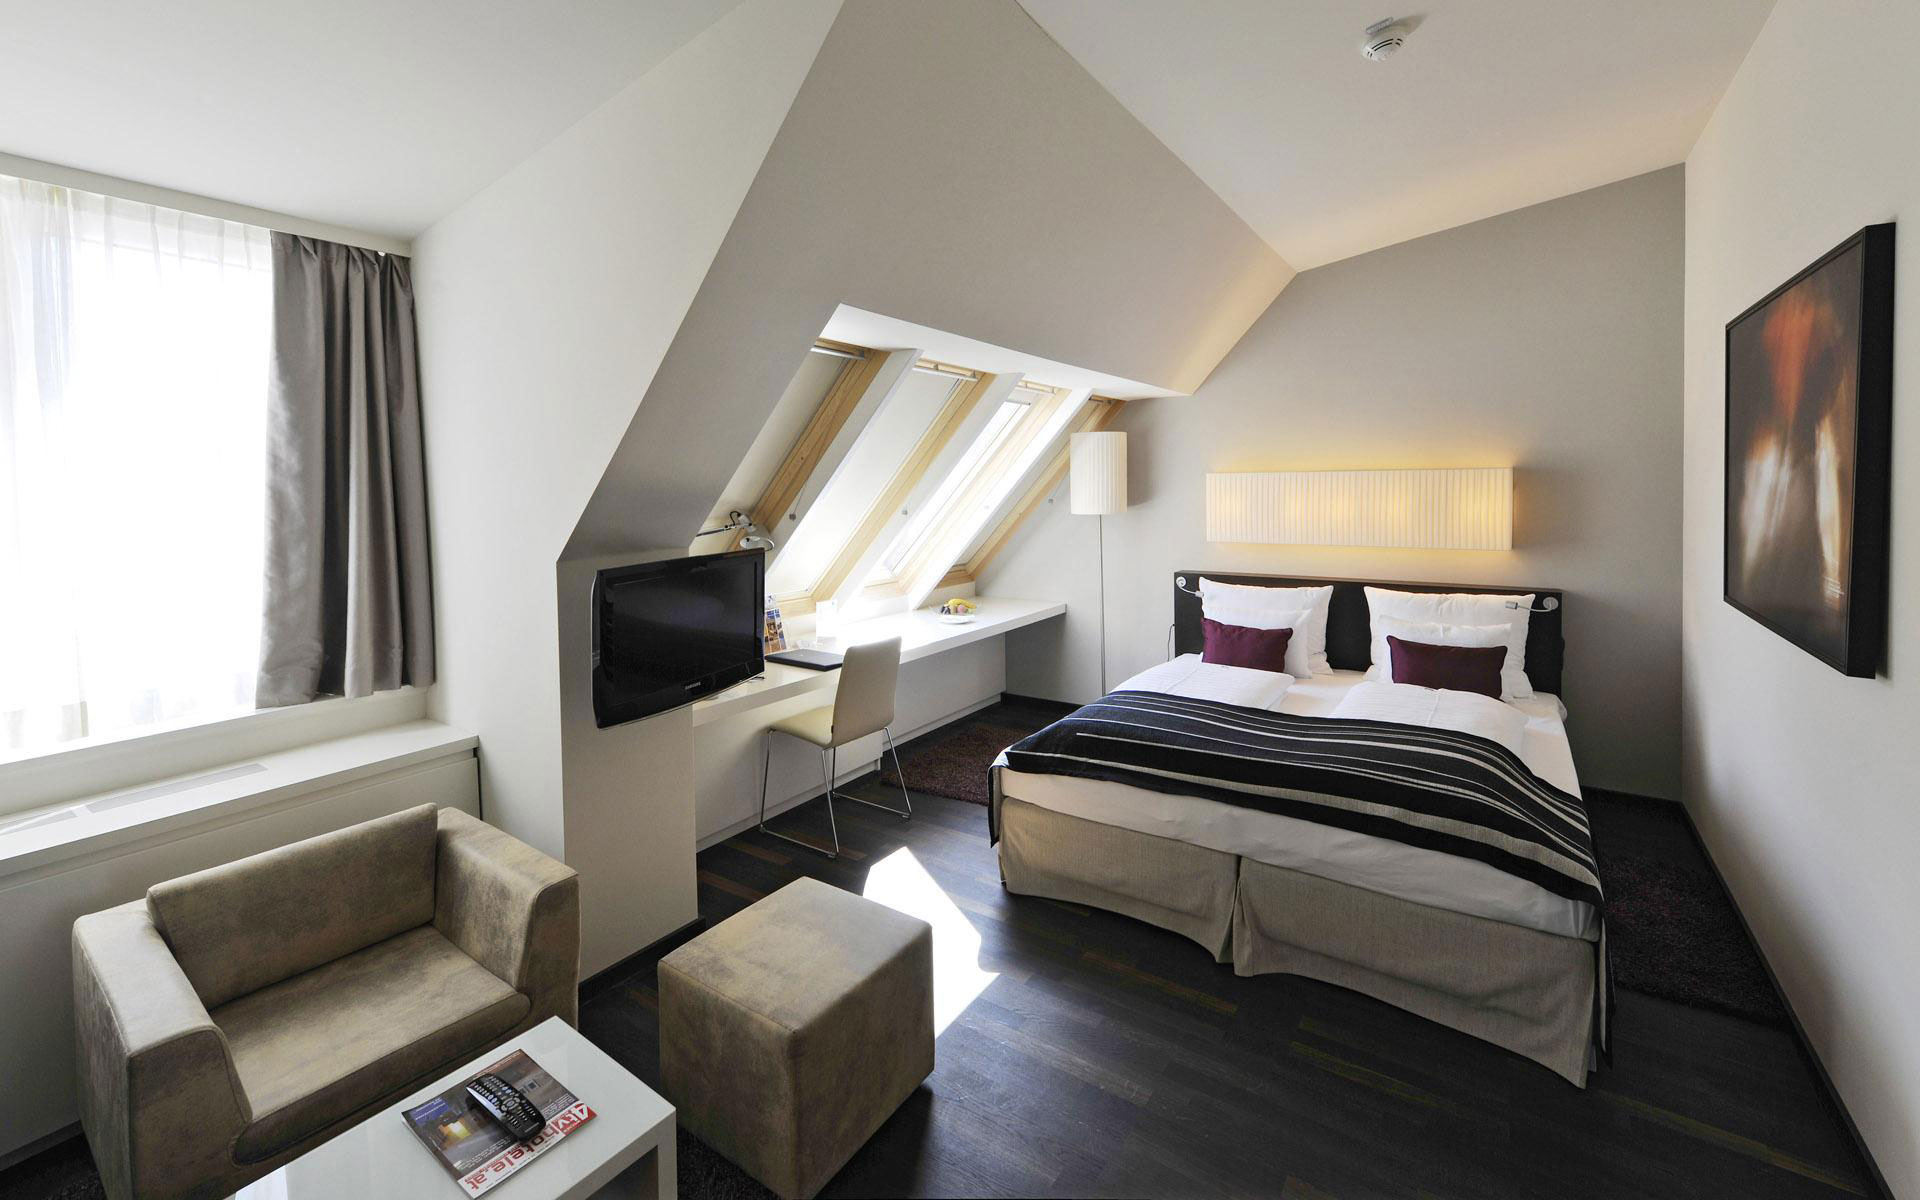 Дизайн комнаты 16 кв м: гостиная и спальня в одной комнате - реальные фото